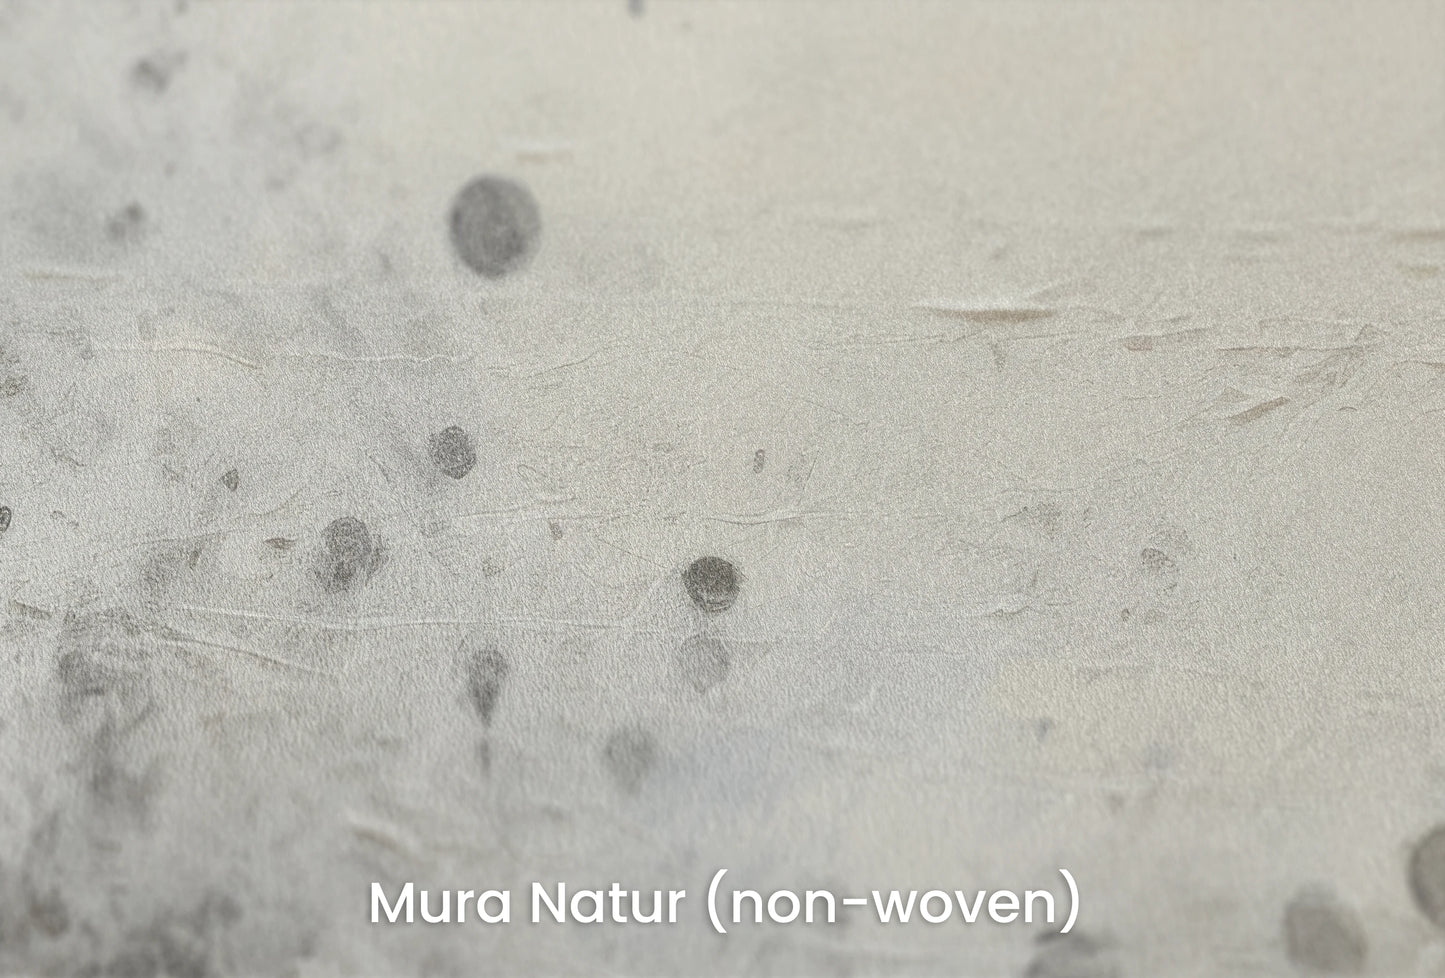 Zbliżenie na artystyczną fototapetę o nazwie Uranian Chill na podłożu Mura Natur (non-woven) - naturalne i ekologiczne podłoże.